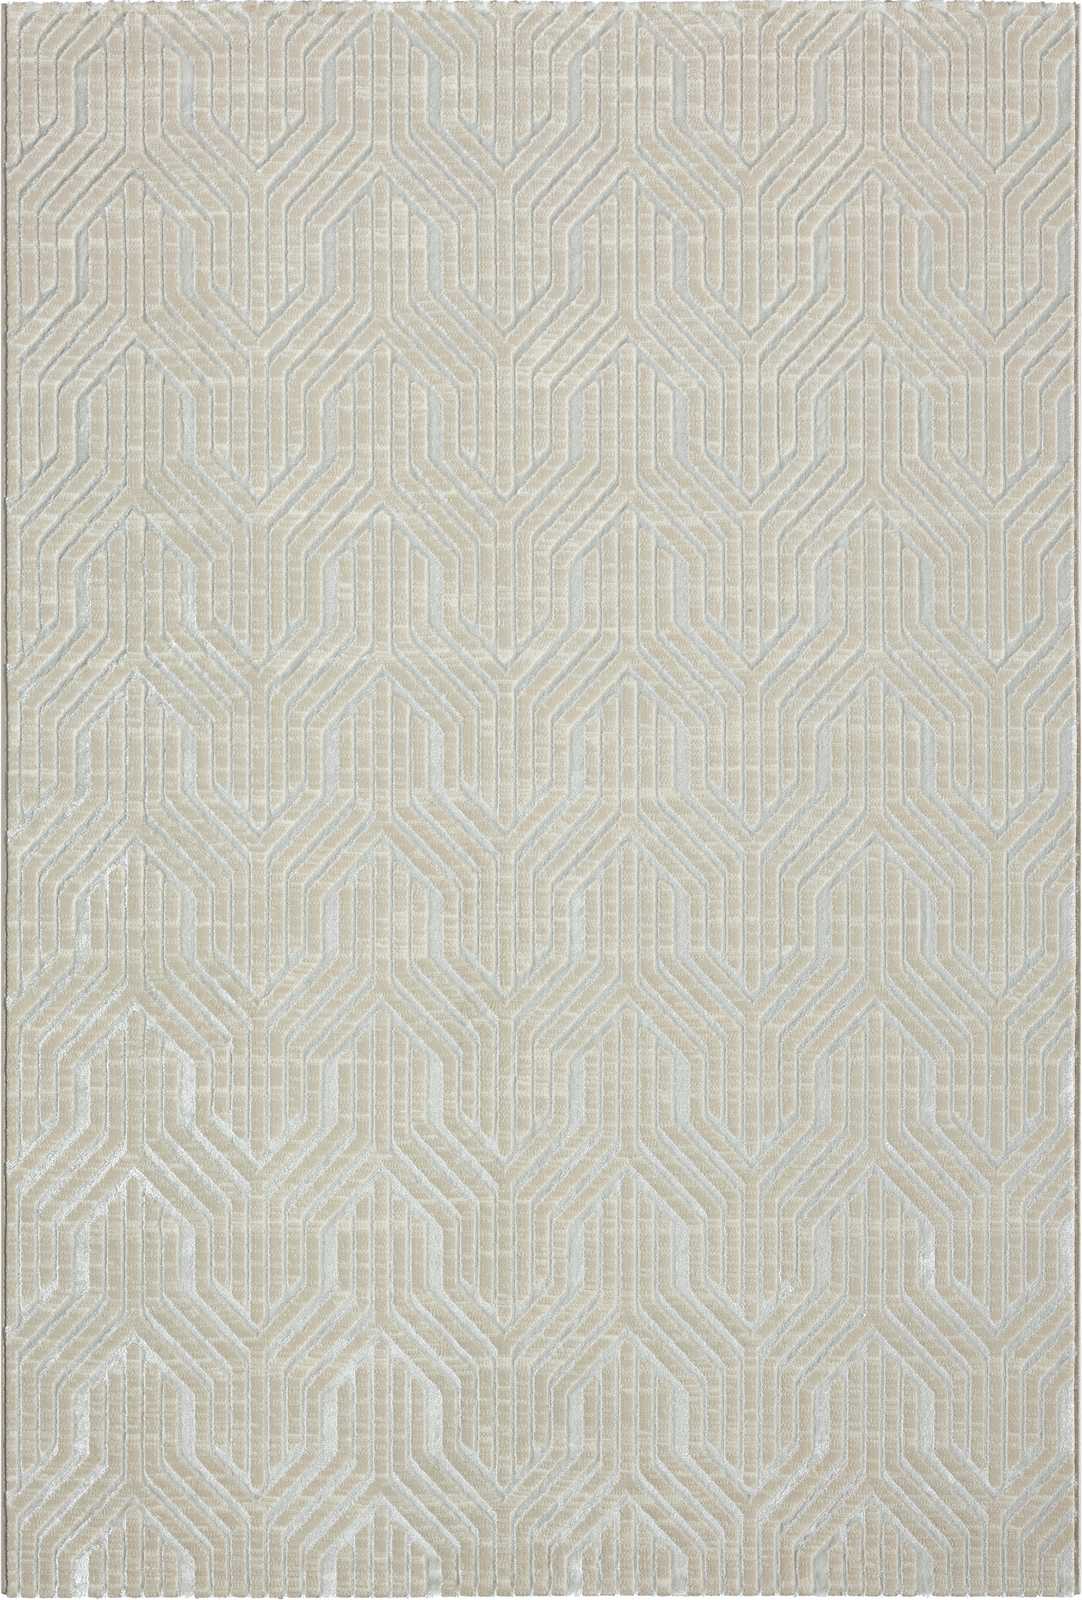             Sanfter Hochflor Teppich in Creme – 200 x 140 cm
        